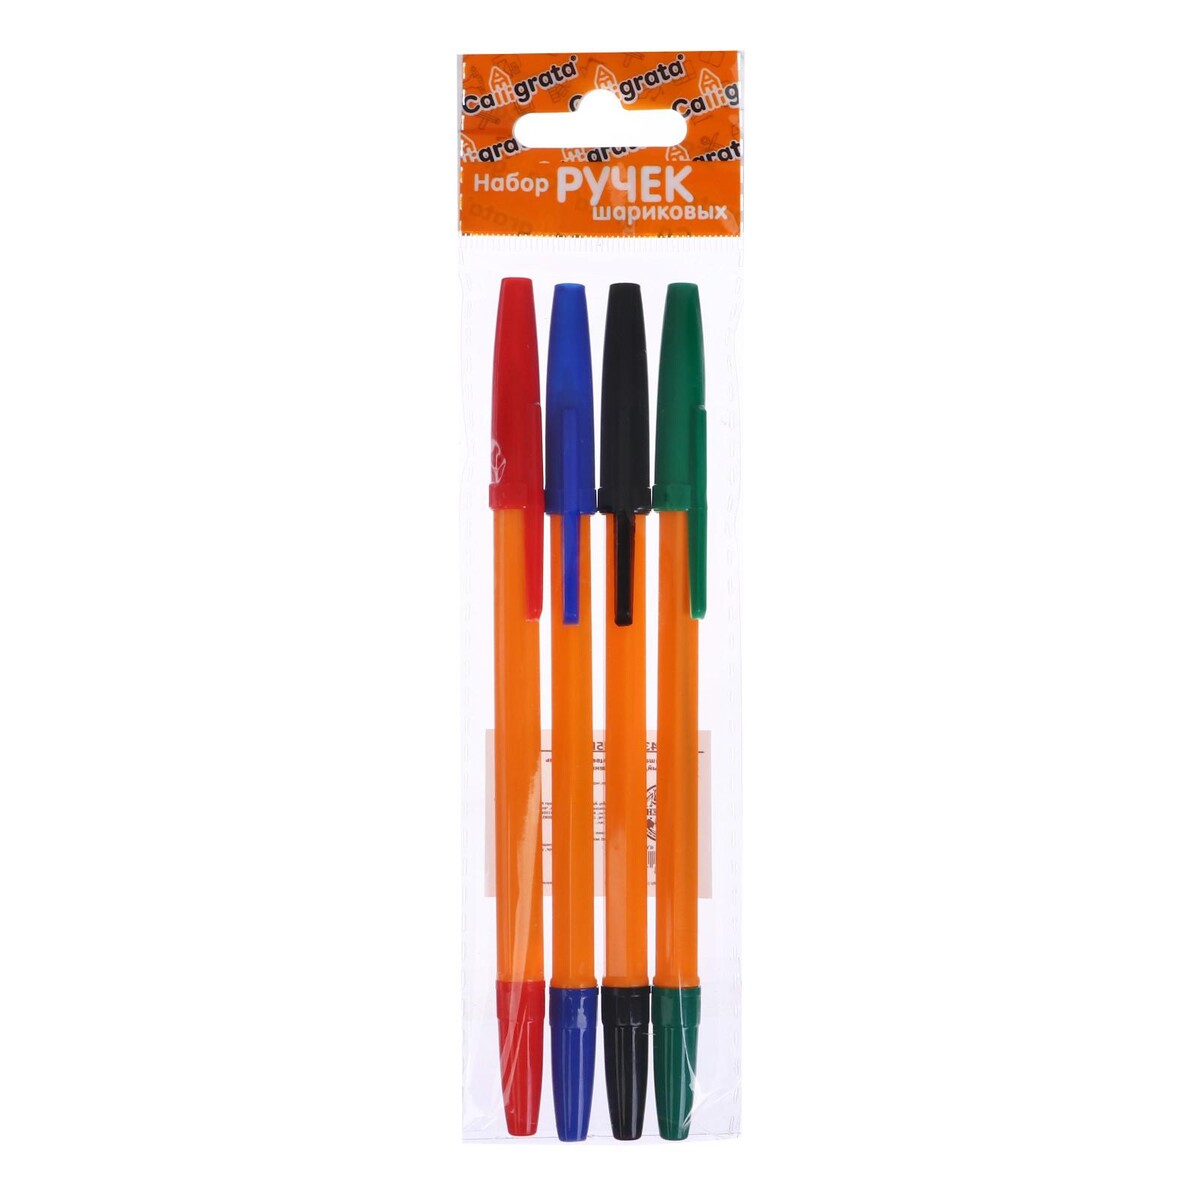 Набор ручек шариковых 4 цвета, стержень 0,7 мм, синий, красный, черный, зеленый, корпус оранжевый аксессуар crowd games мешочек для компонентов настольных игр оранжевый